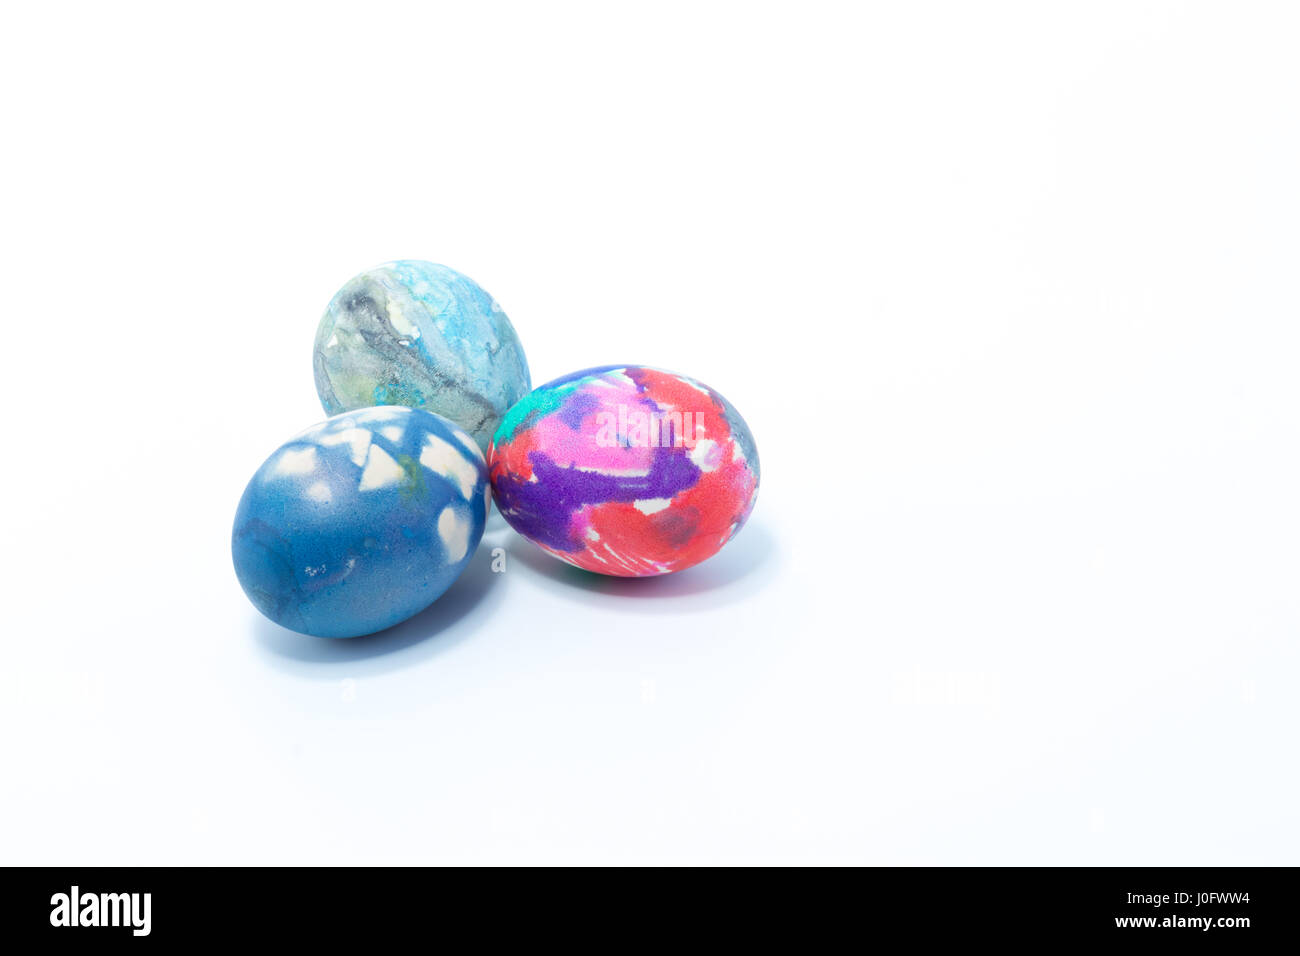 Tre uova pasquali dipinte a mano in home - abstract colori blu scuro, rosa, rosa, bianco e viola - isolato in uno sfondo bianco Foto Stock